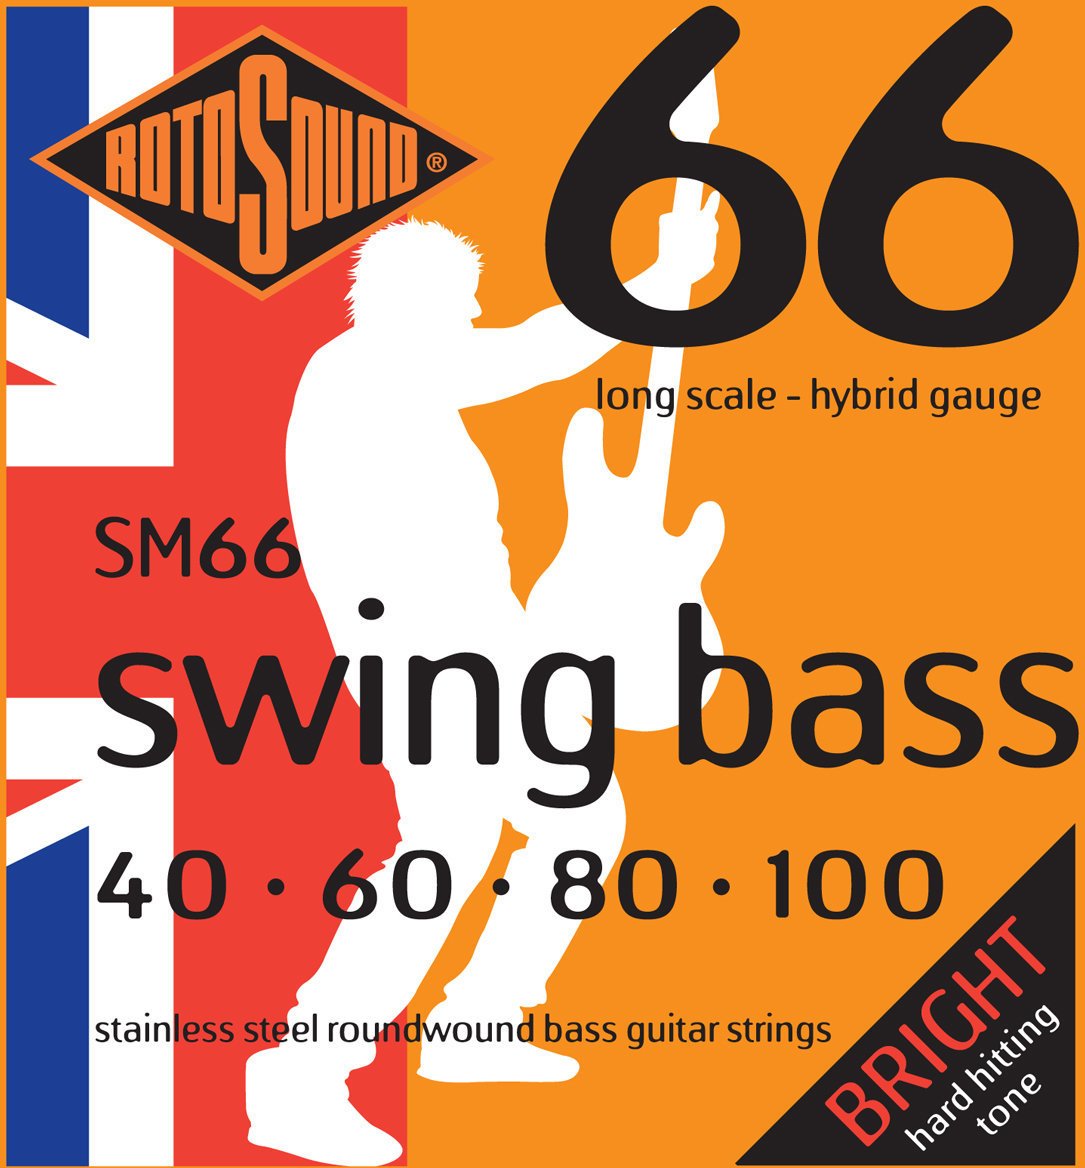 Bassguitar strings Rotosound SM66